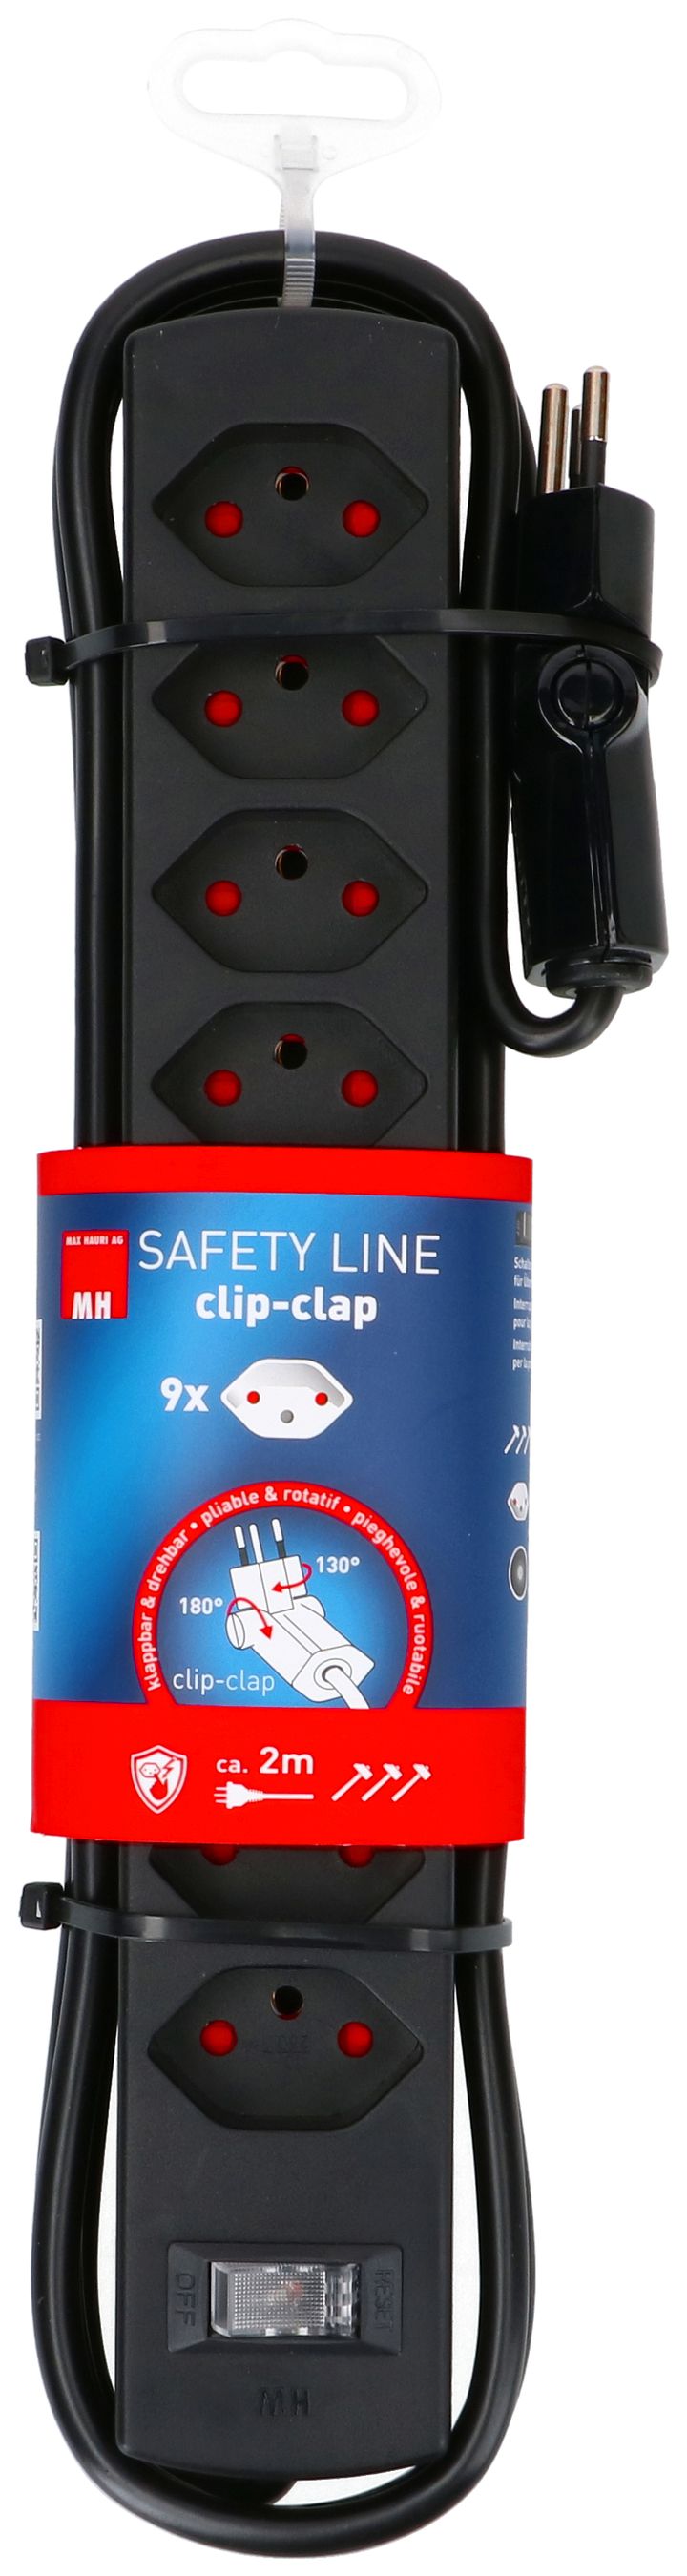 Steckdosenleiste Safety Line 9x Typ 13 BS sw Schalter 2m cli.